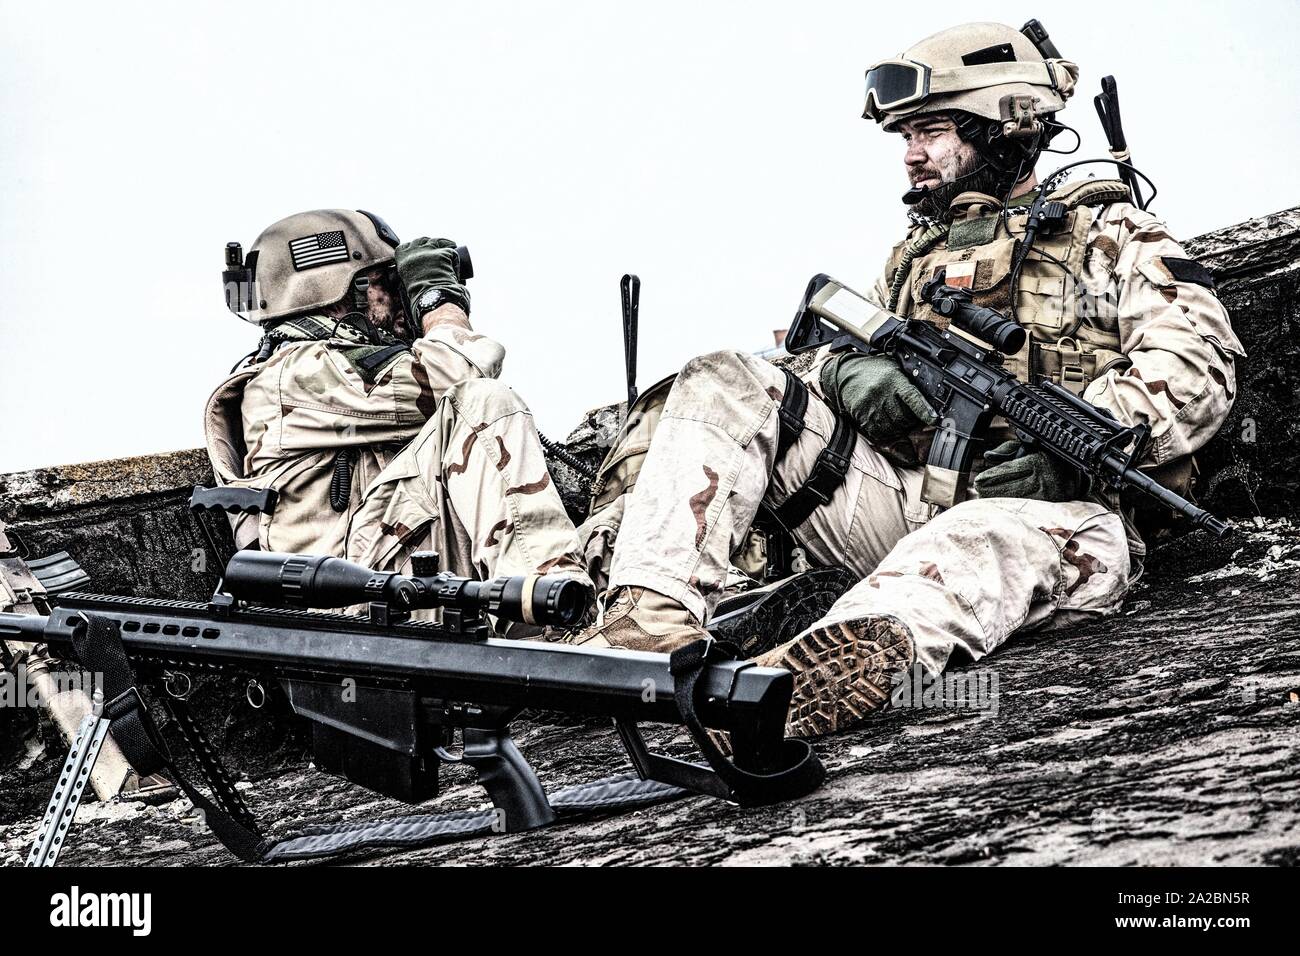 Us Navy SEAL Infanteristen, Commando Scharfschütze in der Schlacht einheitliche, bewaffnet mit Angriff service Gewehr mit Optik, Beobachtung Gebiet während Stockfoto